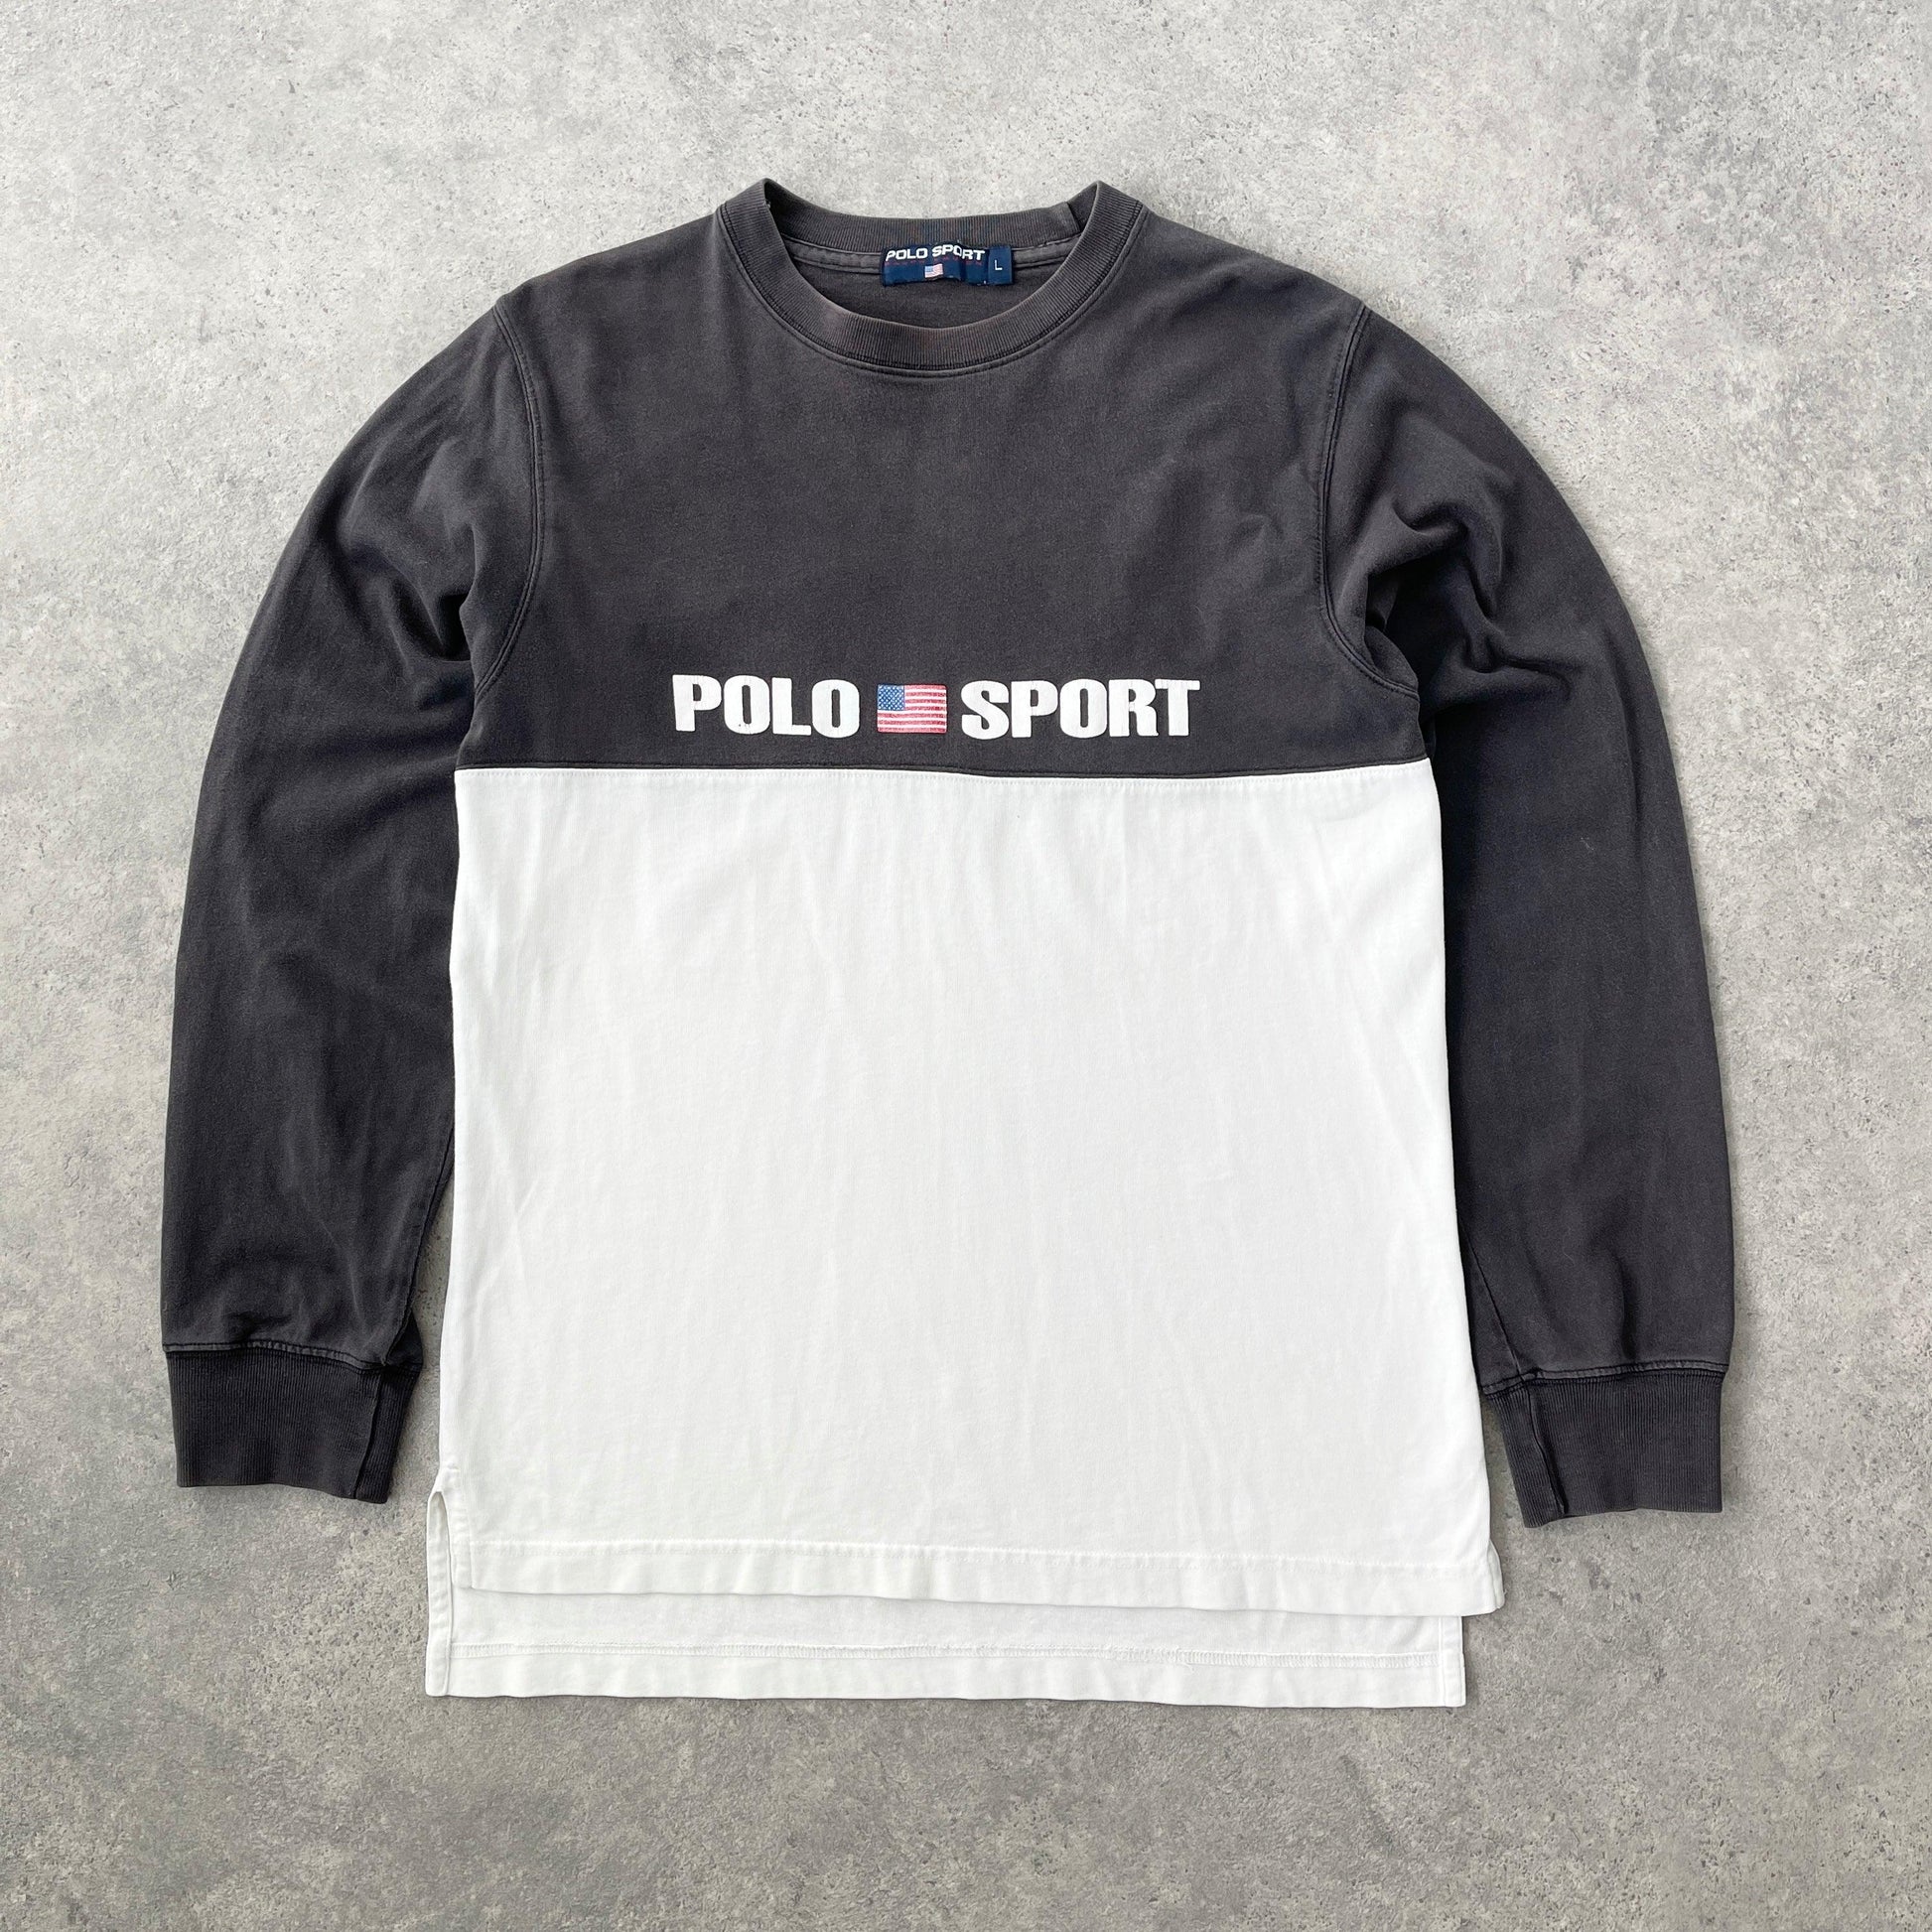 Polo Sport Ralph Lauren 1990s spellout colour block t-shirt (L) - Known Source